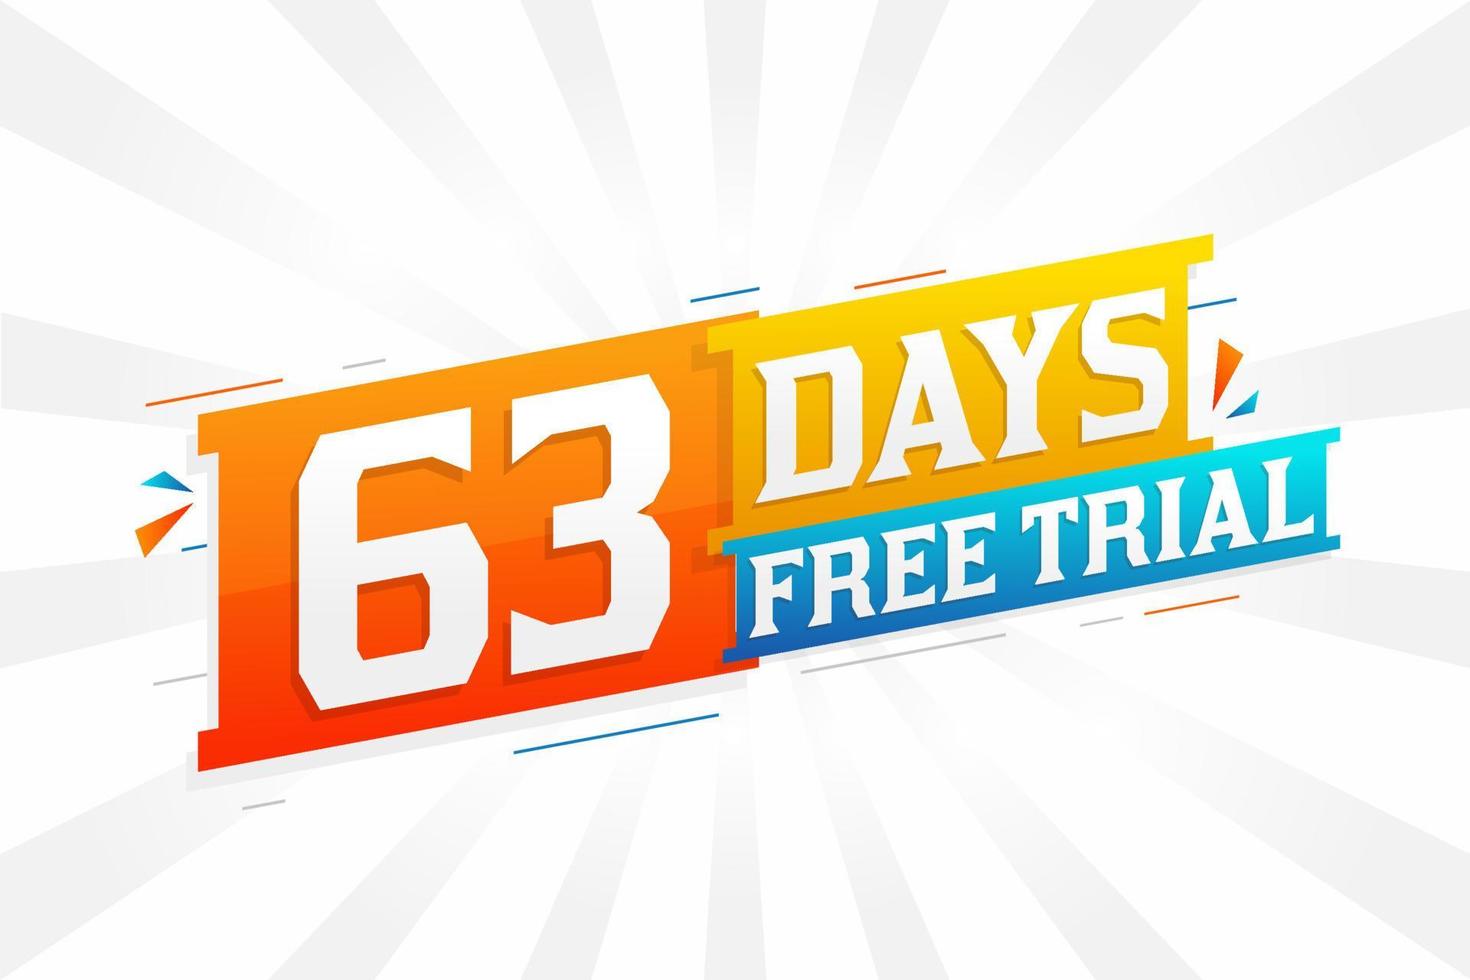 63 jours d'essai gratuit vecteur de stock de texte promotionnel en gras